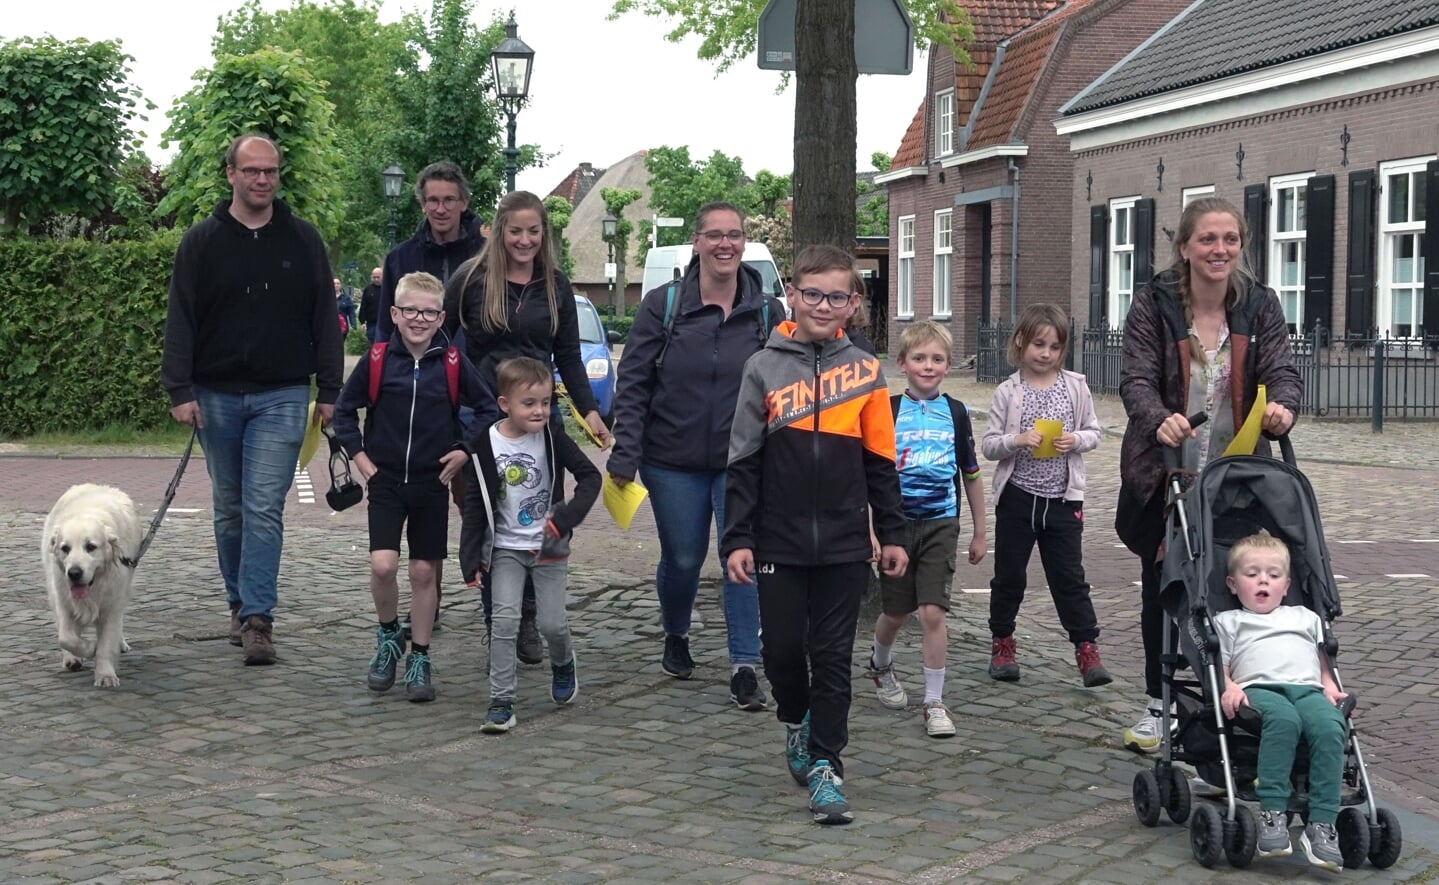 Honderd wandelaars banjeren door Liempde voor de avonddriedaagse van buurtvereniging Den Berg. Basisschool De Oversteek was goed vertegenwoordigd: zo'n acht op de tien lopers bestond uit leerlingen van de school. 